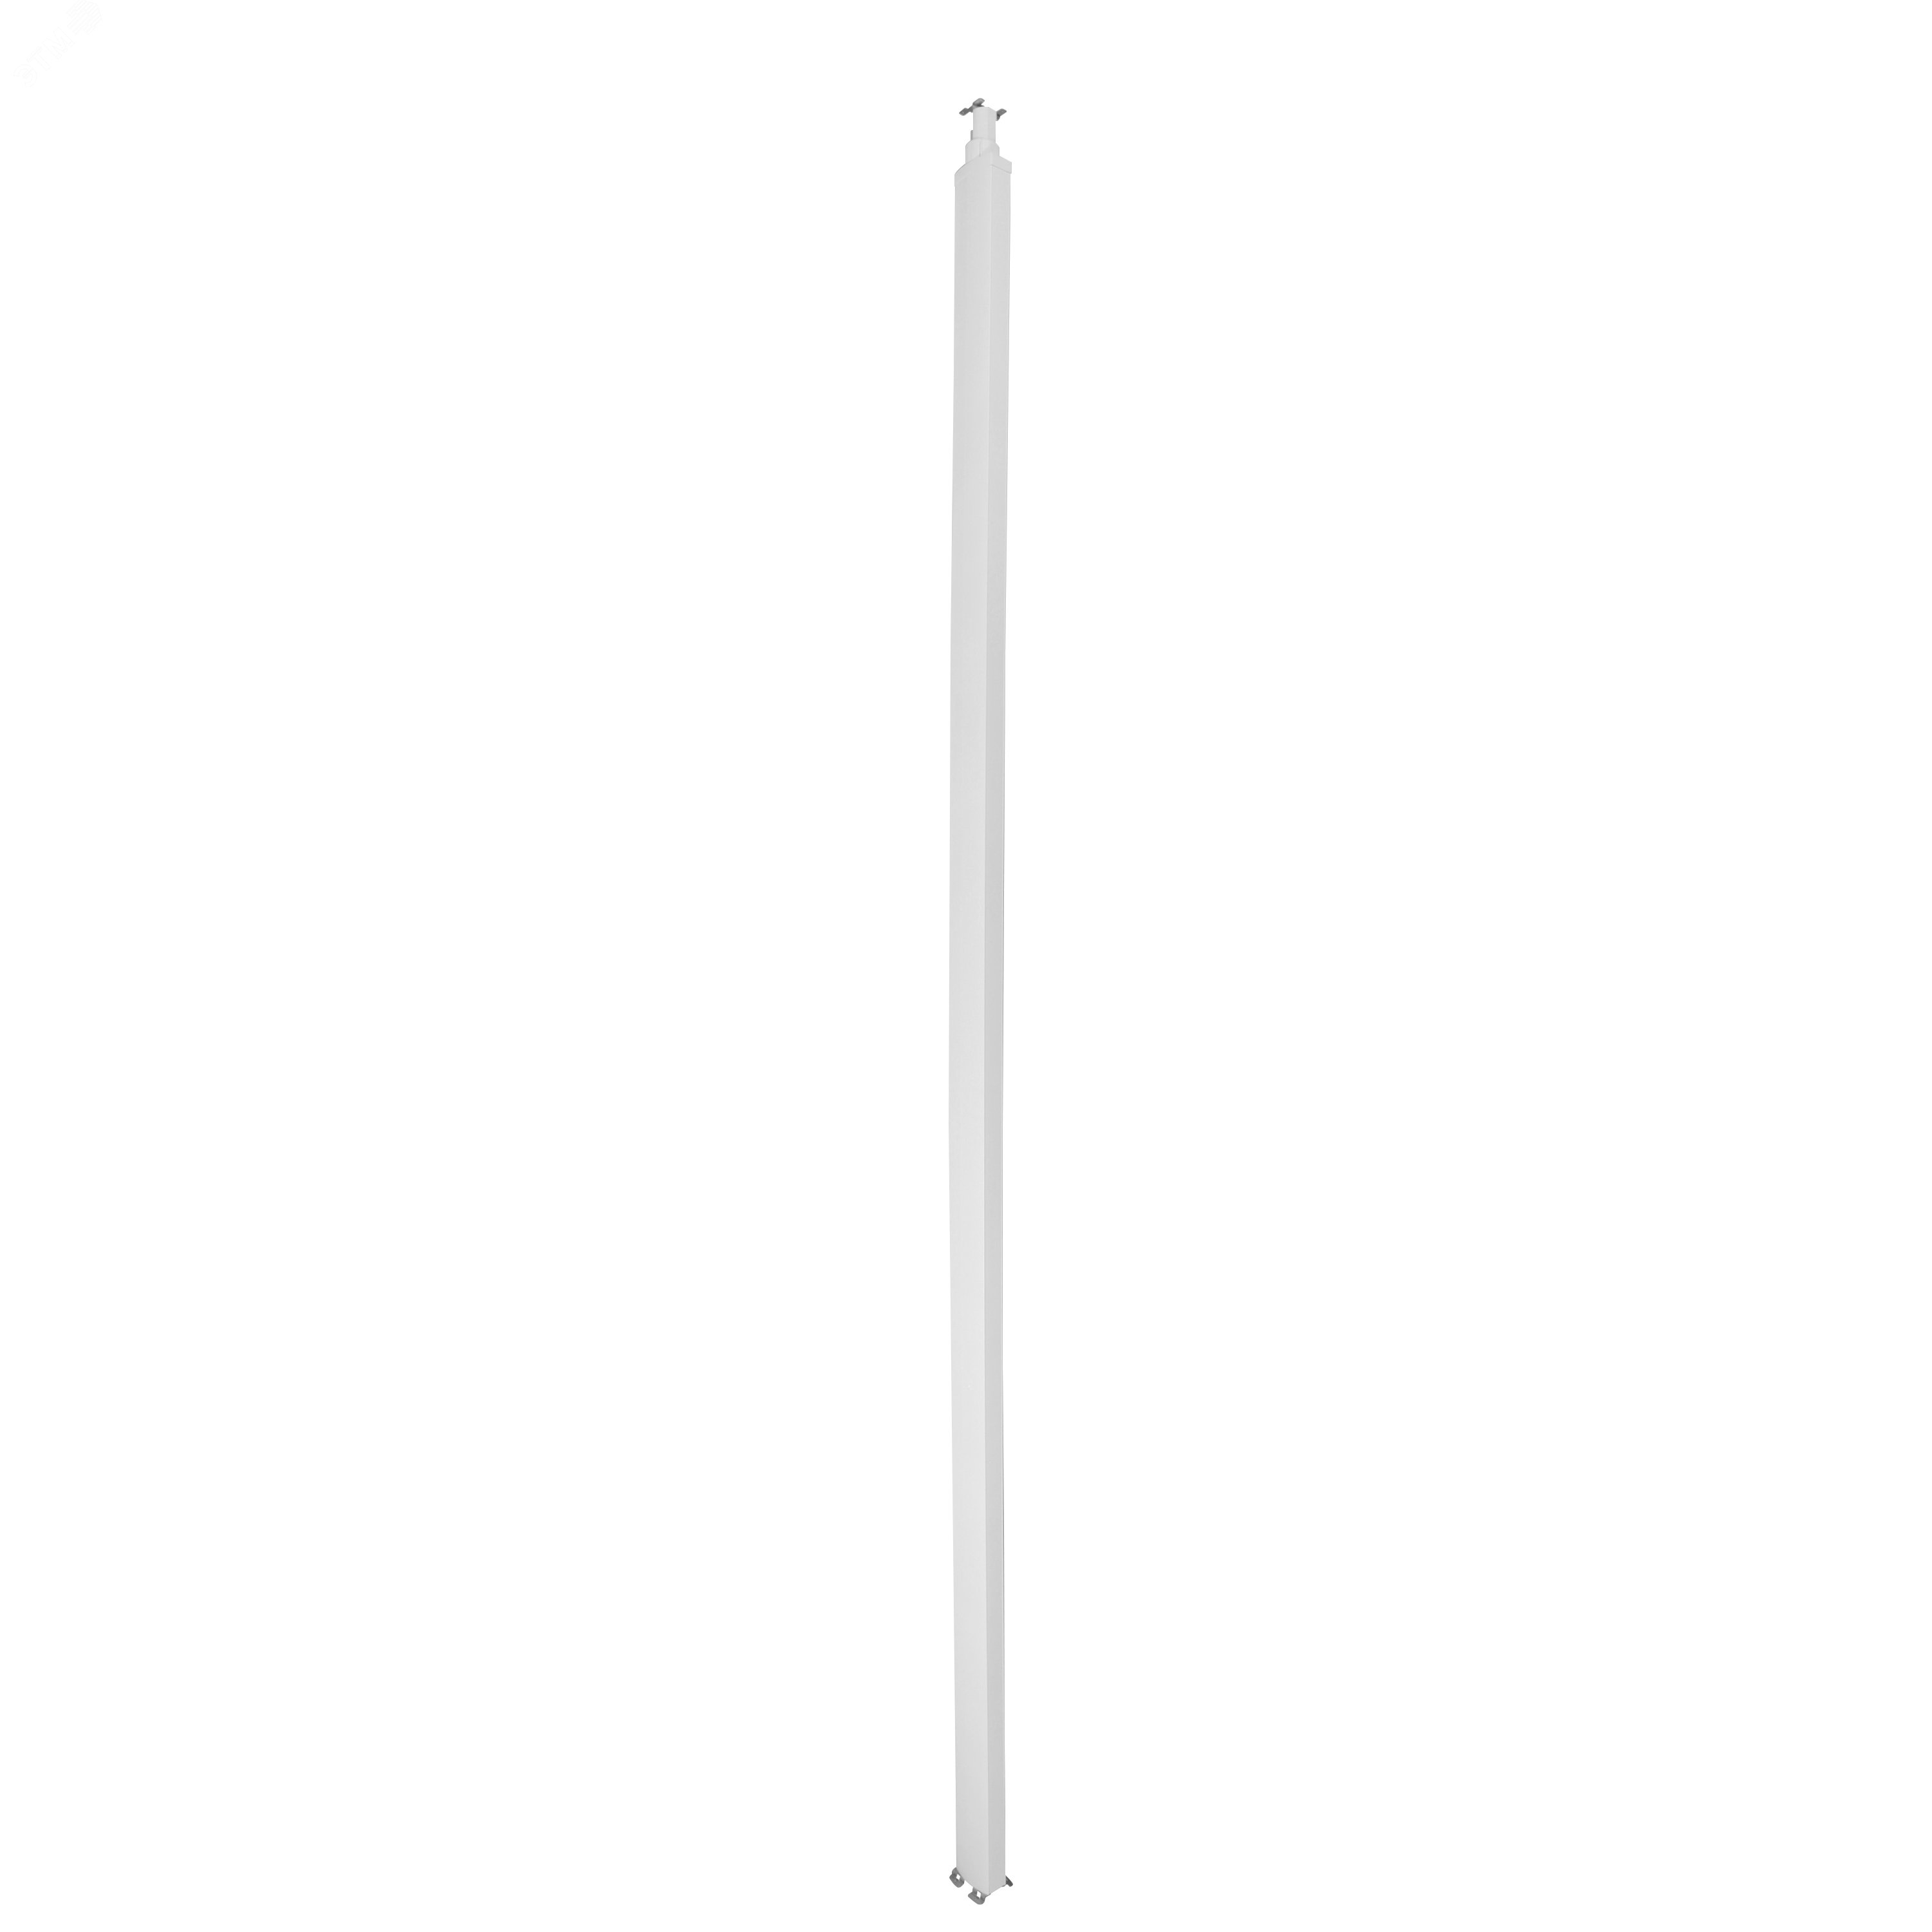 Snap-On колонна пластиковая с крышкой из пластика 2 секции 4,02 метра, с возможностью увеличения высоты колонны до 5,3 метра,  цвет белый 653033 Legrand - превью 2